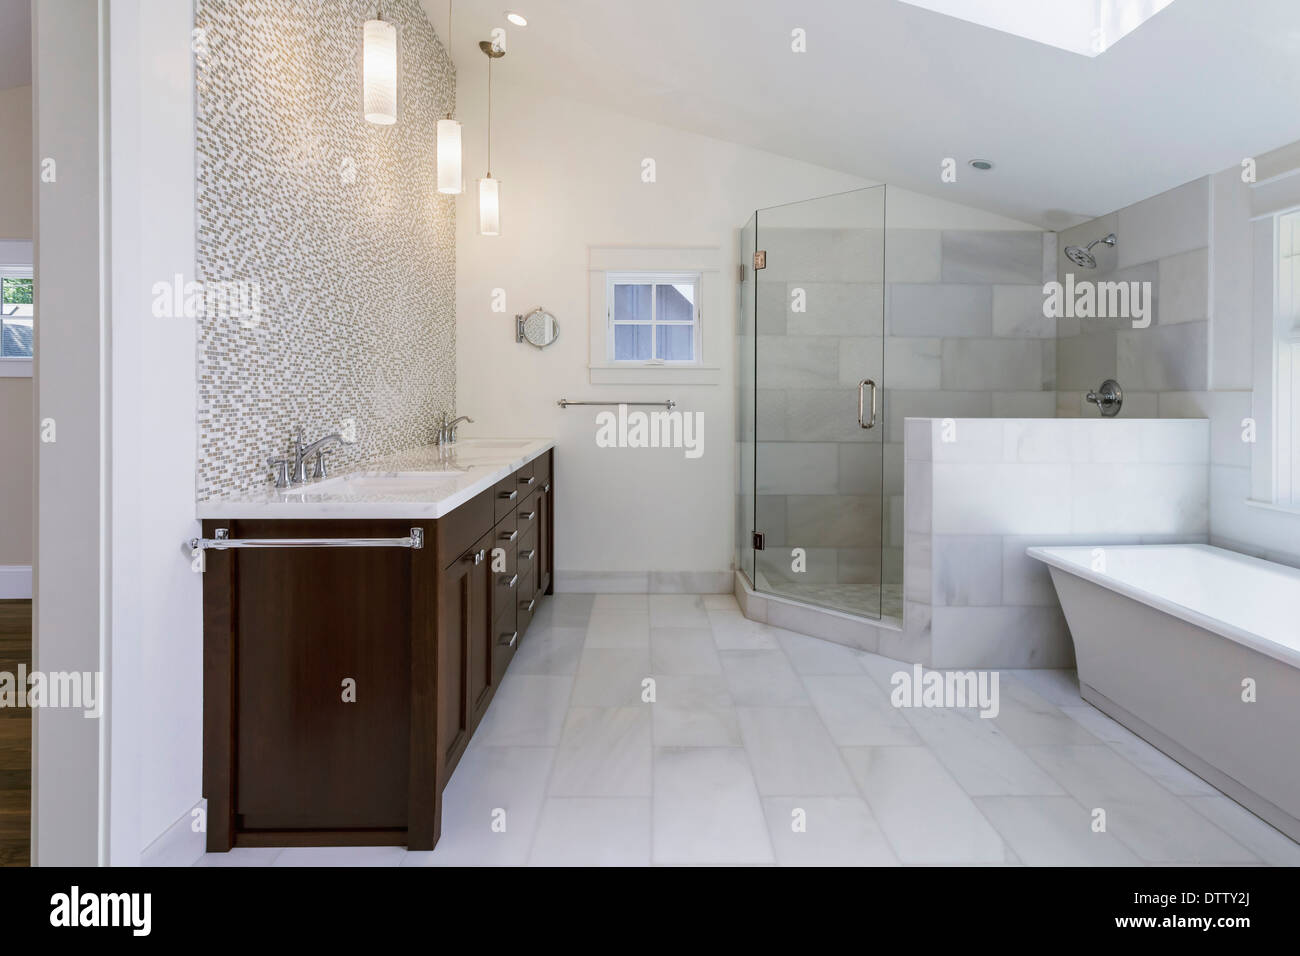 Waschbecken, Badewanne und Dusche im modernen Badezimmer Stockfoto